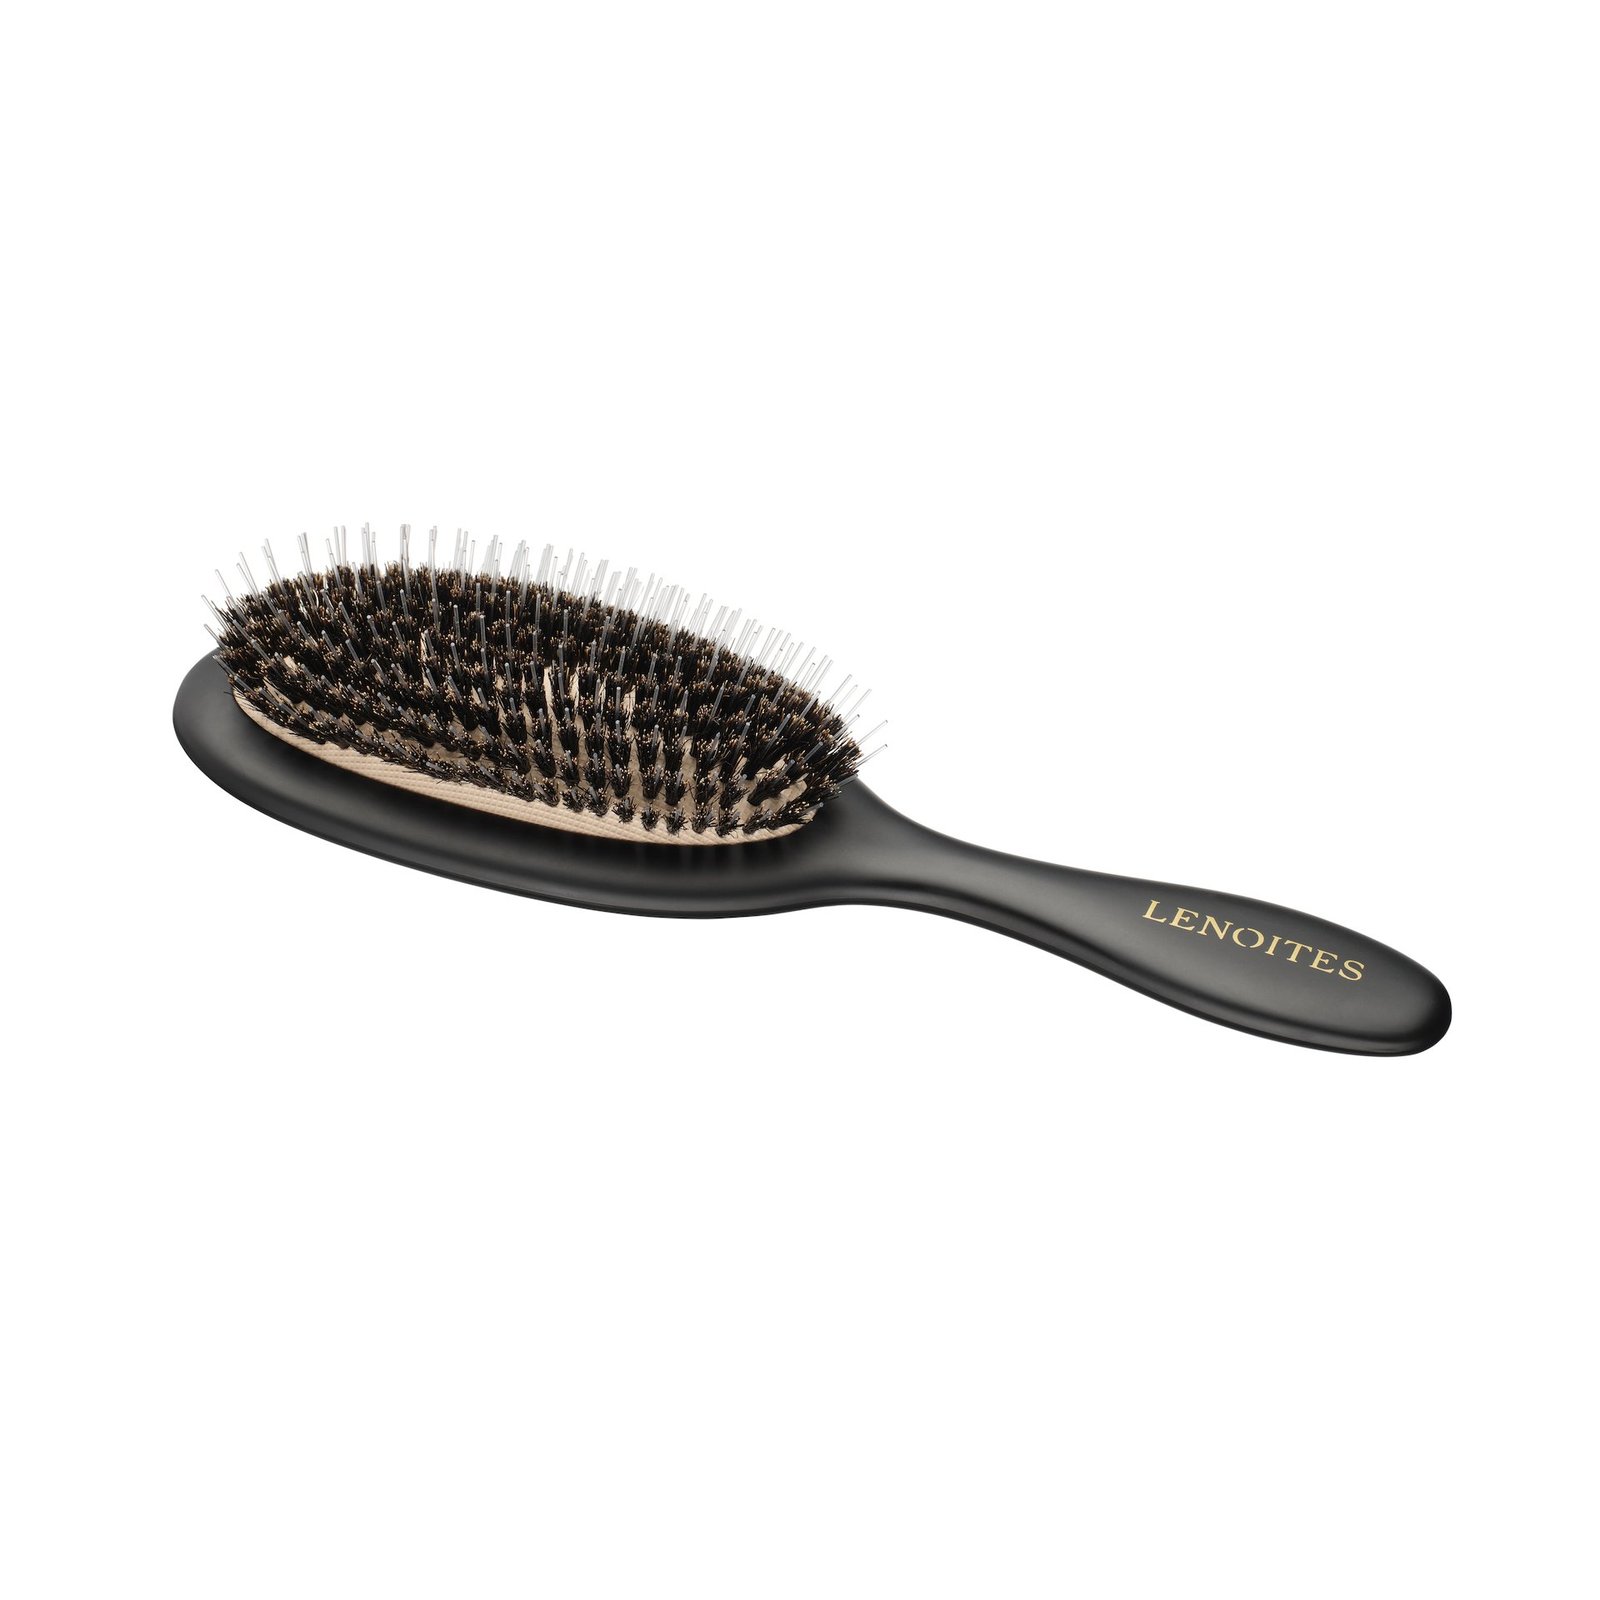 Lenoites Hair Brush Wild Boar + Pouch & Cleaner Tool Black 1 st